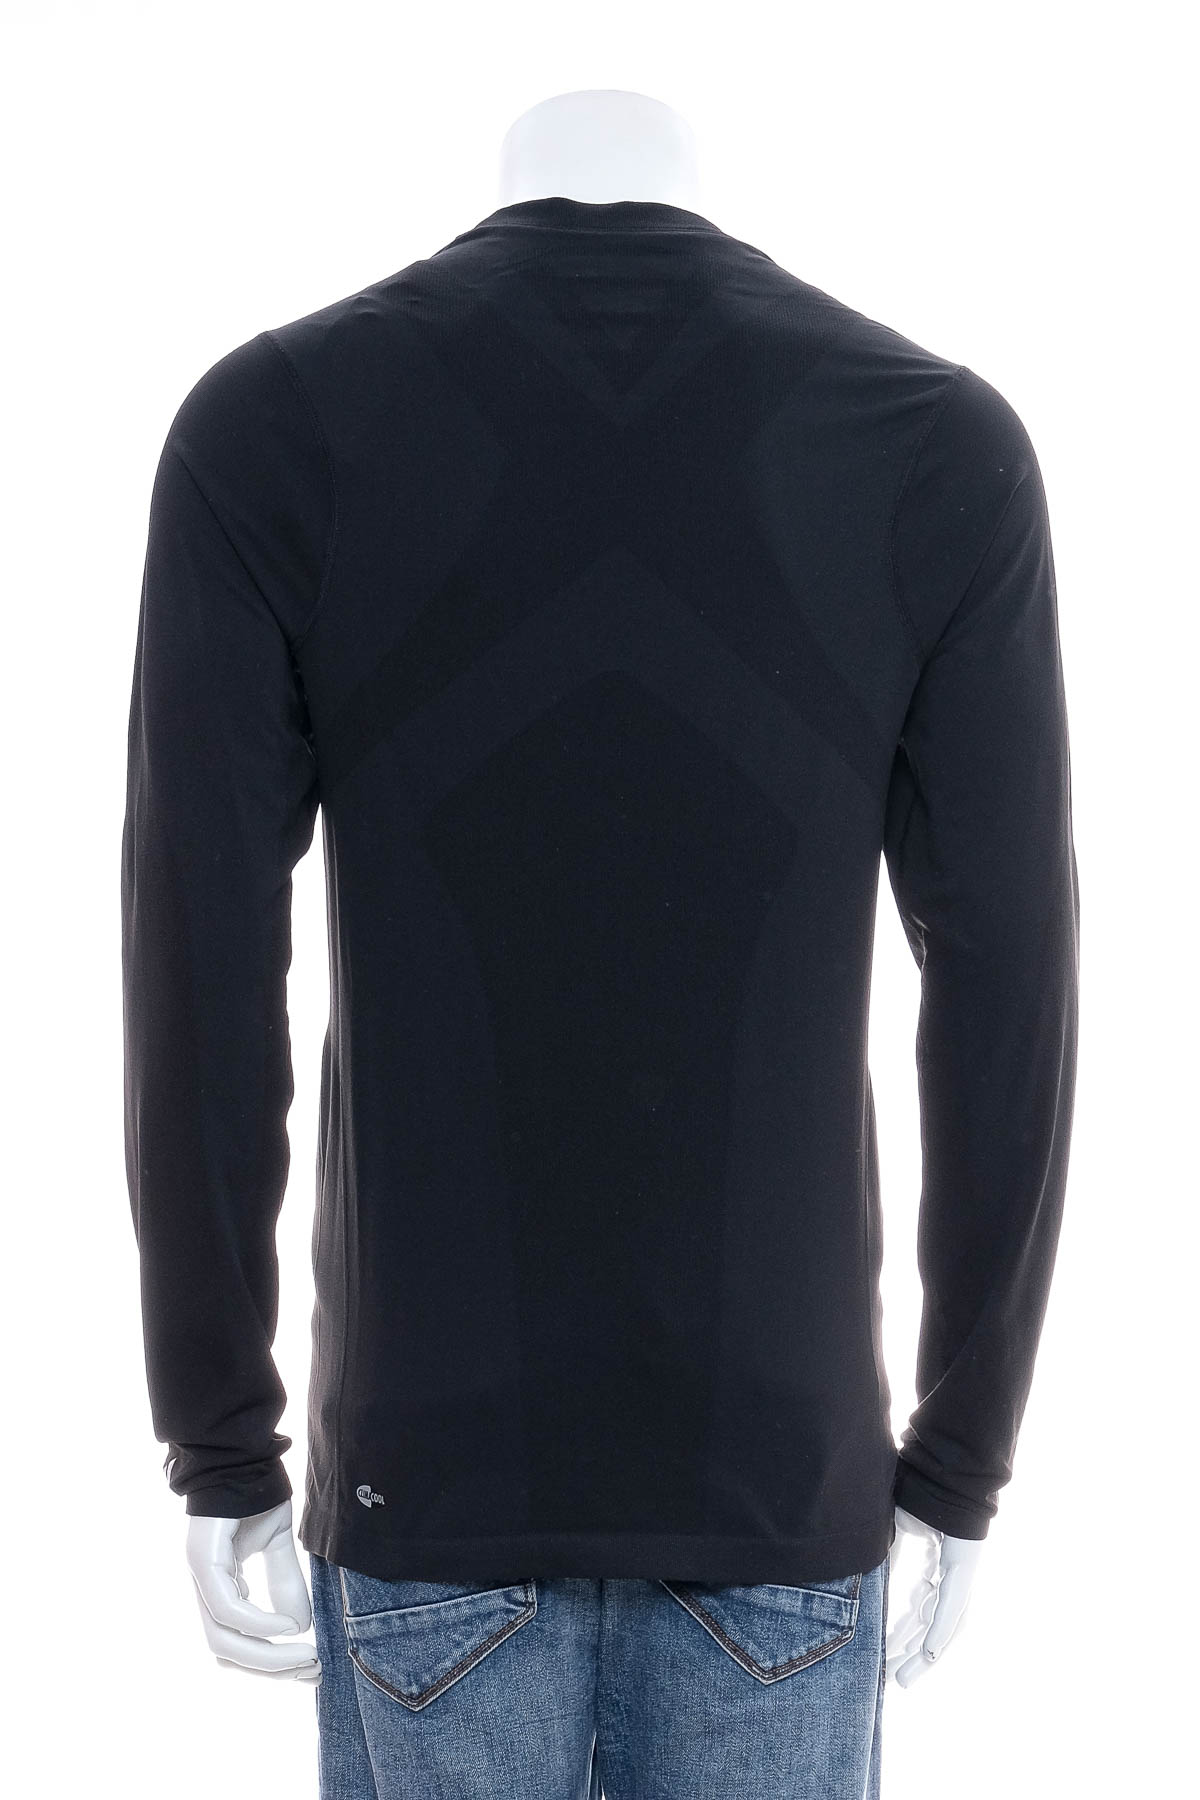 Ανδρική μπλούζα - Adidas - 1